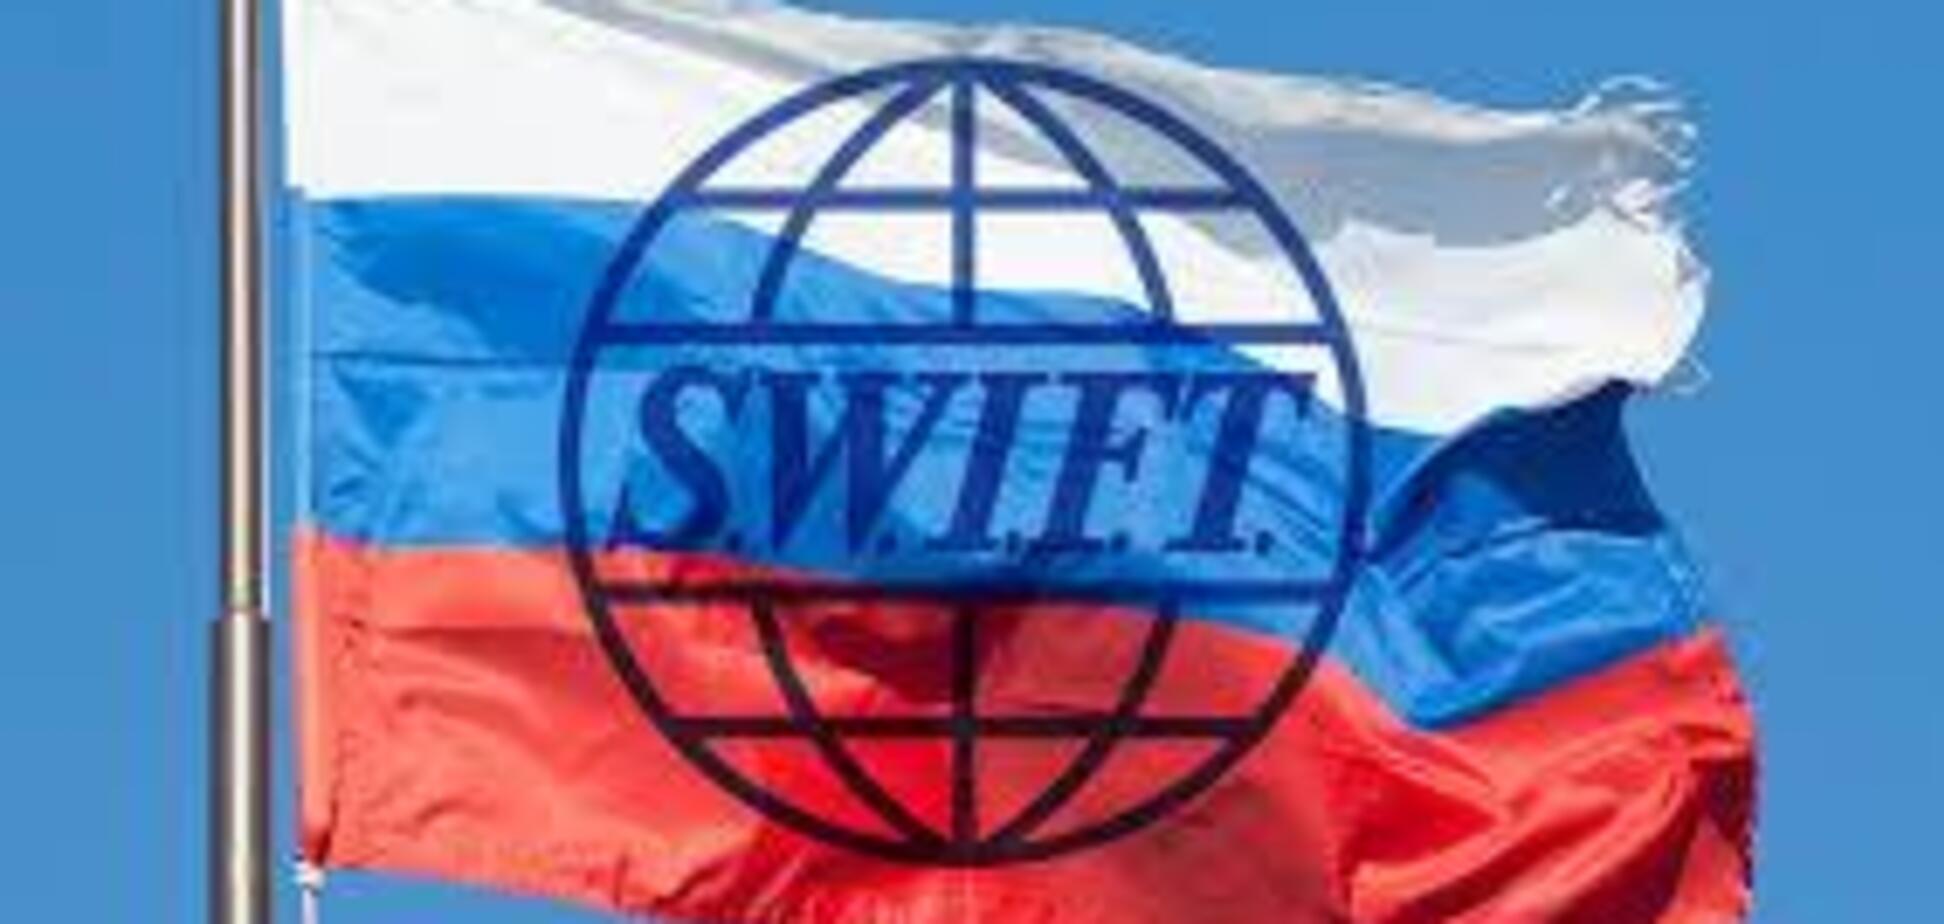 Отключение России от SWIFT - всего лишь вопрос времени